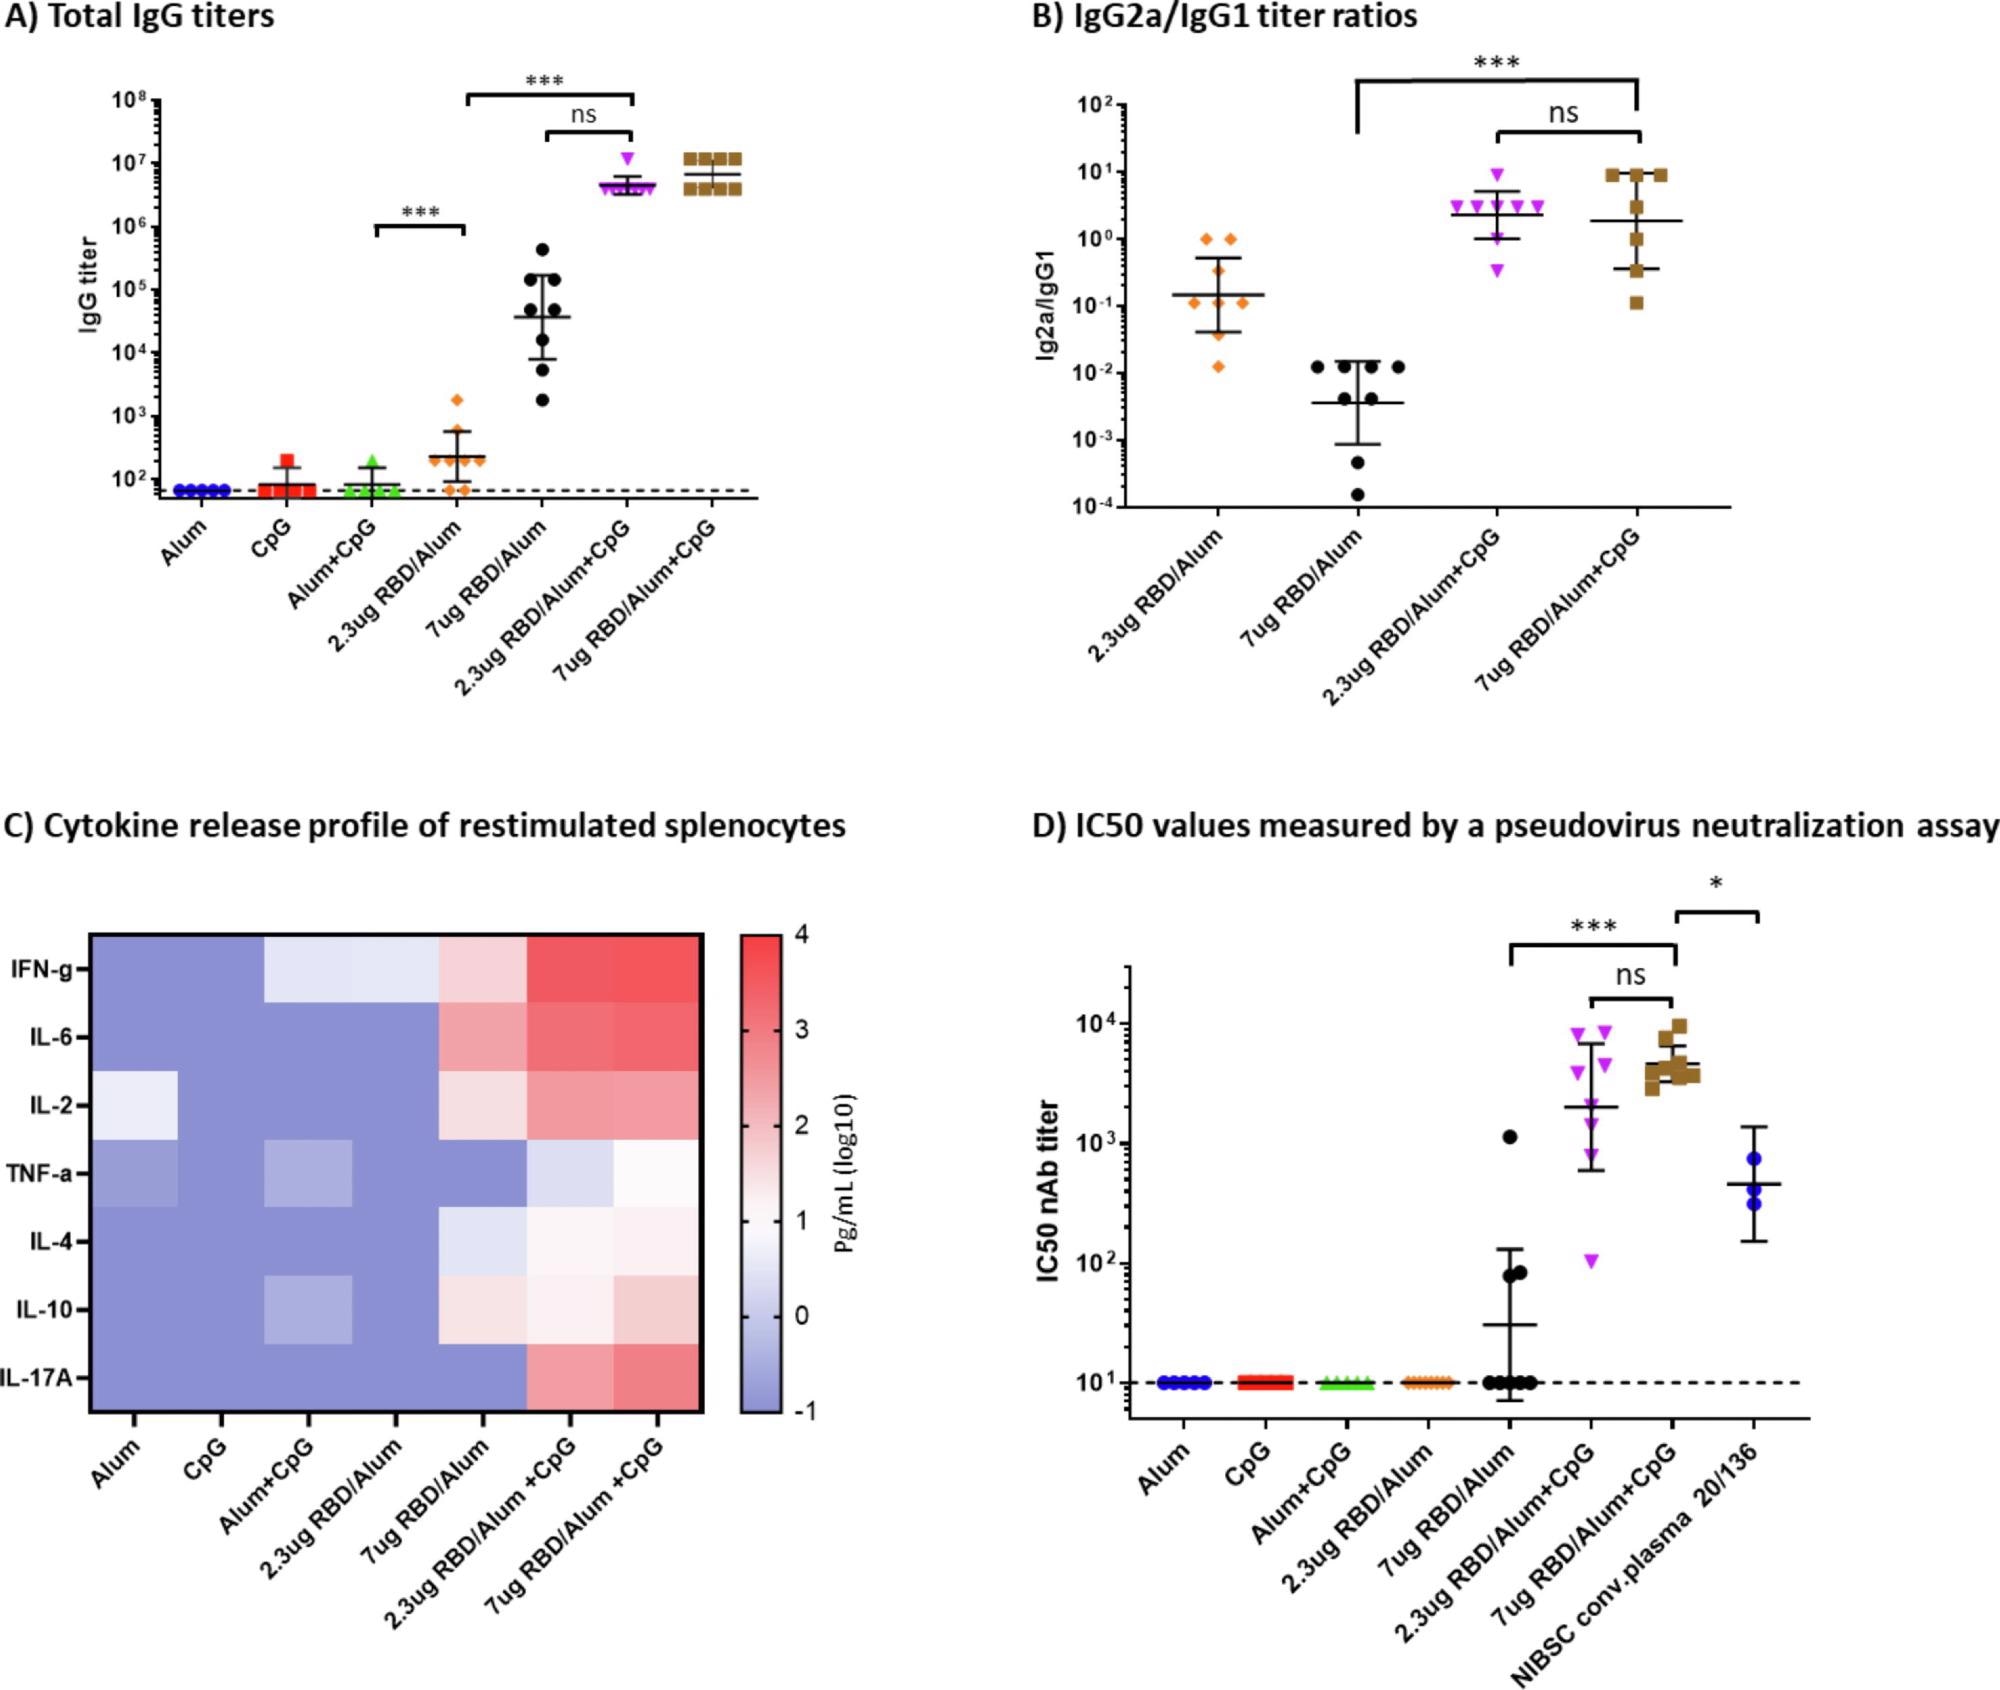 Respuesta inmune humoral y celular en ratones inmunizados.  a) Títulos de IgG total al día 35, medidos por ELISA.  b) proporciones de títulos de IgG2a/IgG1.  Se muestran la media geométrica y los intervalos de confianza del 95%.  c) Mapa de calor de los niveles de citoquinas secretadas medidos en sobrenadantes de esplenocitos reestimulados con proteína SARS-CoV-2 RBD.  Se calcularon y graficaron los valores medios dentro de cada grupo de tratamiento para cada citocina.  D) Los valores de IC se midieron mediante un ensayo de neutralización utilizando el pseudovirus SARS-CoV-2 Wuhan.  Se realizaron pruebas de Mann-Whitney para evaluar la significación estadística entre los diferentes grupos.  p > 0,12 (ns), p <0.033